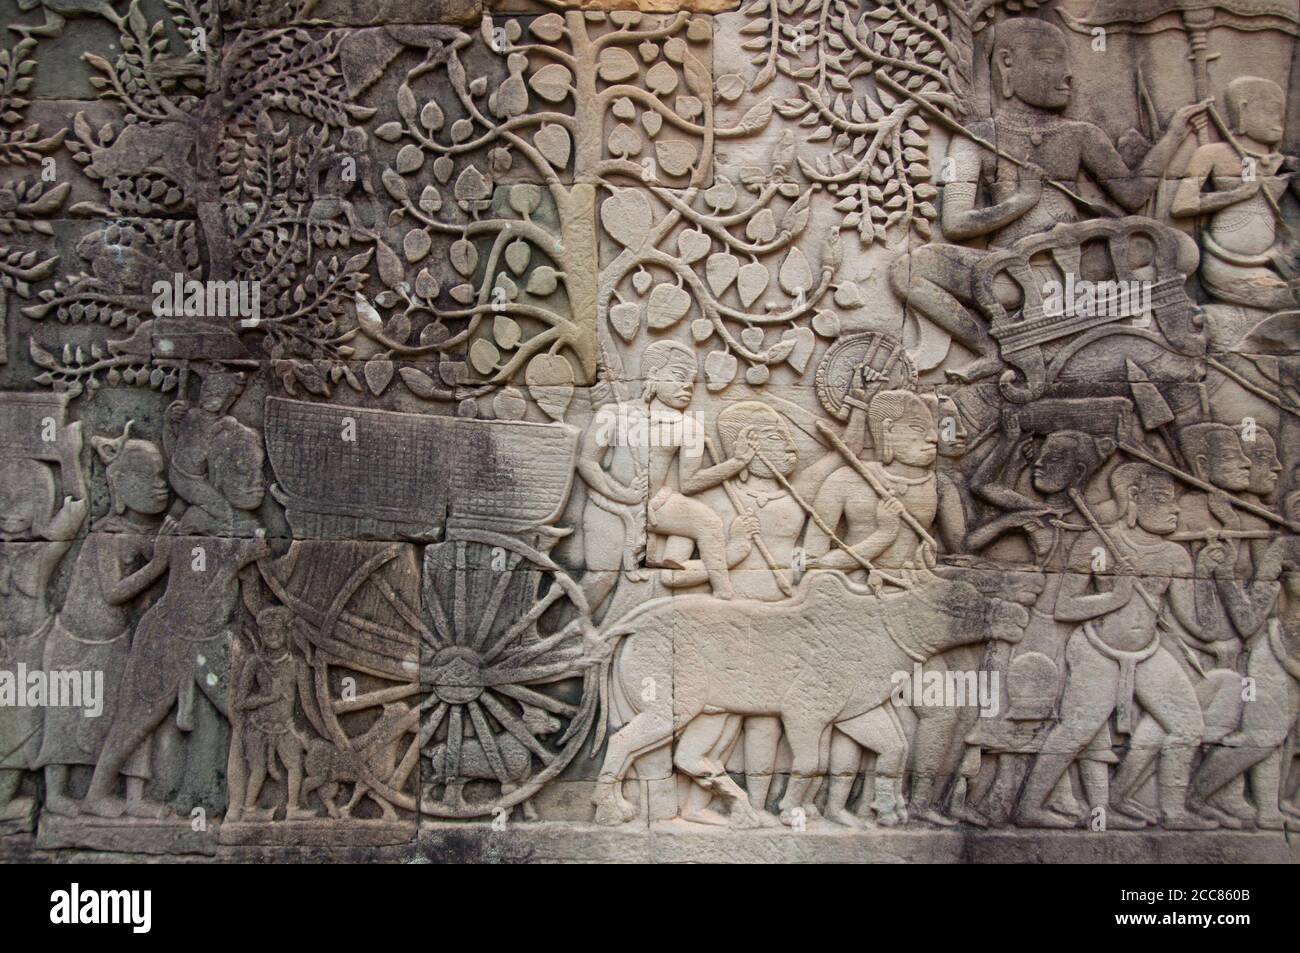 Cambodge: Oxcart avec des femmes et des enfants suivant l'armée khmère dans la bataille, Bas-secours mur de l'est, section sud, le Bayon, Angkor Thom. Le Bayon était à l'origine le temple officiel du roi bouddhiste Mahayana Jayavarman VII Le Bayon, au centre d'Angkor Thom (Grande ville), fut fondé au XIIe siècle par le roi Jayavarman VII Angkor Thom, signifiant "la Grande ville", est situé à un mile au nord d'Angkor Wat. Il a été construit à la fin du XIIe siècle ce par le roi Jayavarman VII Banque D'Images